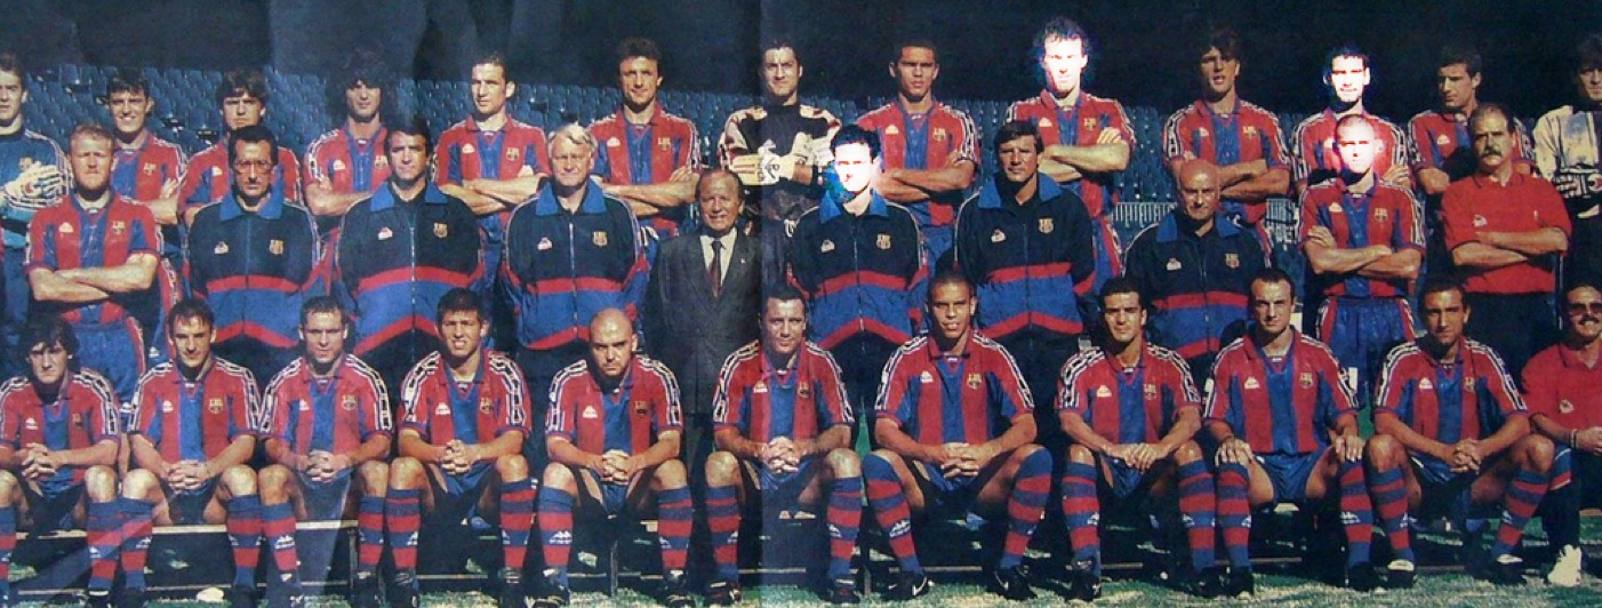 Barcellona 1996-97, Bobby Robson tecnico: occhio ai volti illuminati di Laurent Blanc, Pep Guardiola, Jos Mourinho (all&#39;epoca assistente) e Luis Enrique. Oggi sono gli allenatori che in questa stagione hanno vinto 4 dei 5 principali campionati europei